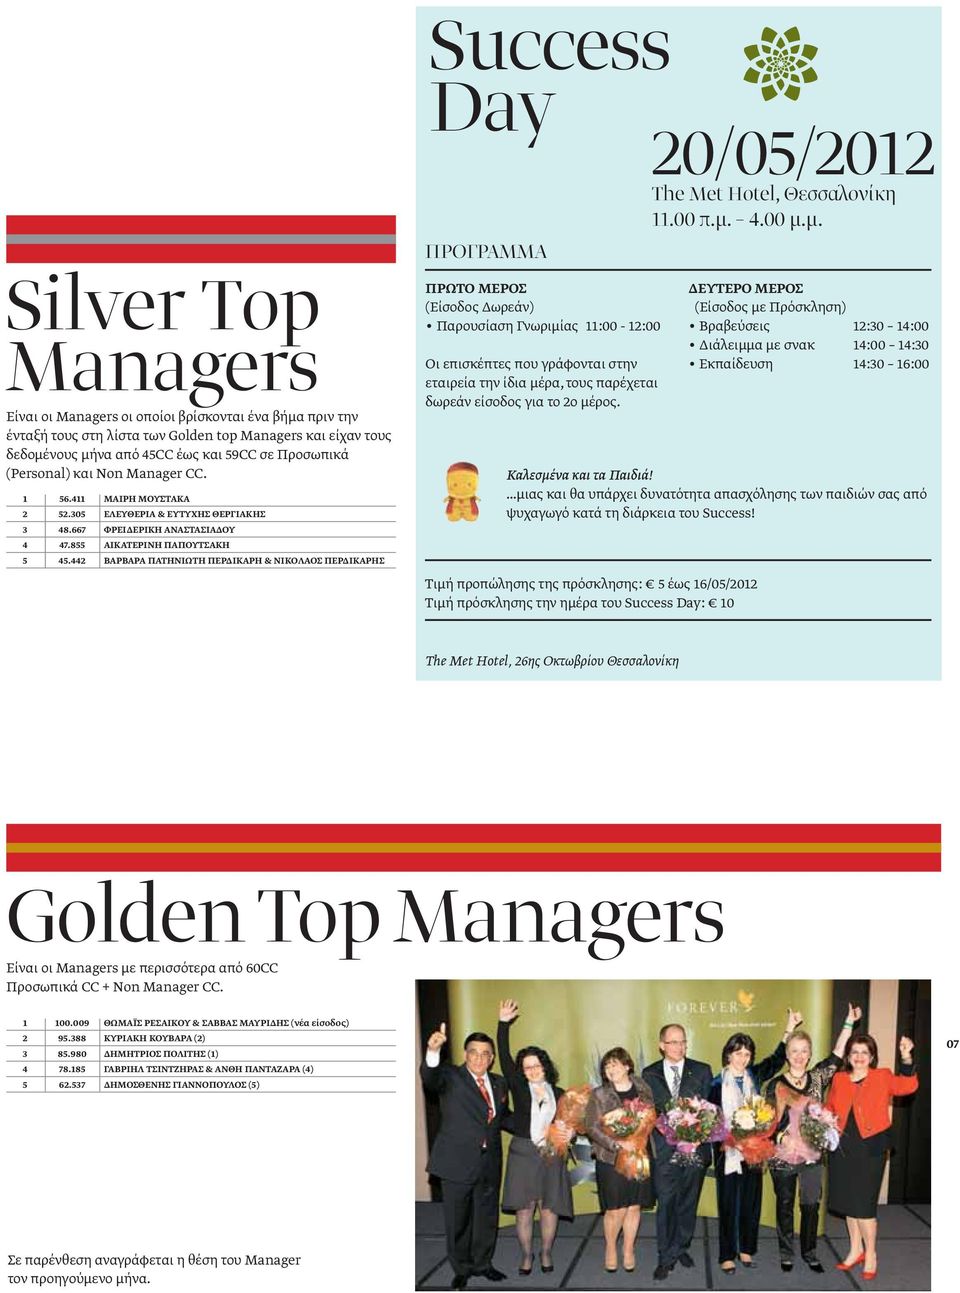 μ. Silver Τop Managers Είναι οι Managers οι οποίοι βρίσκονται ένα βήμα πριν την ένταξή τους στη λίστα των Golden top Managers και είχαν τους δεδομένους μήνα από 45CC έως και 59CC σε Προσωπικά